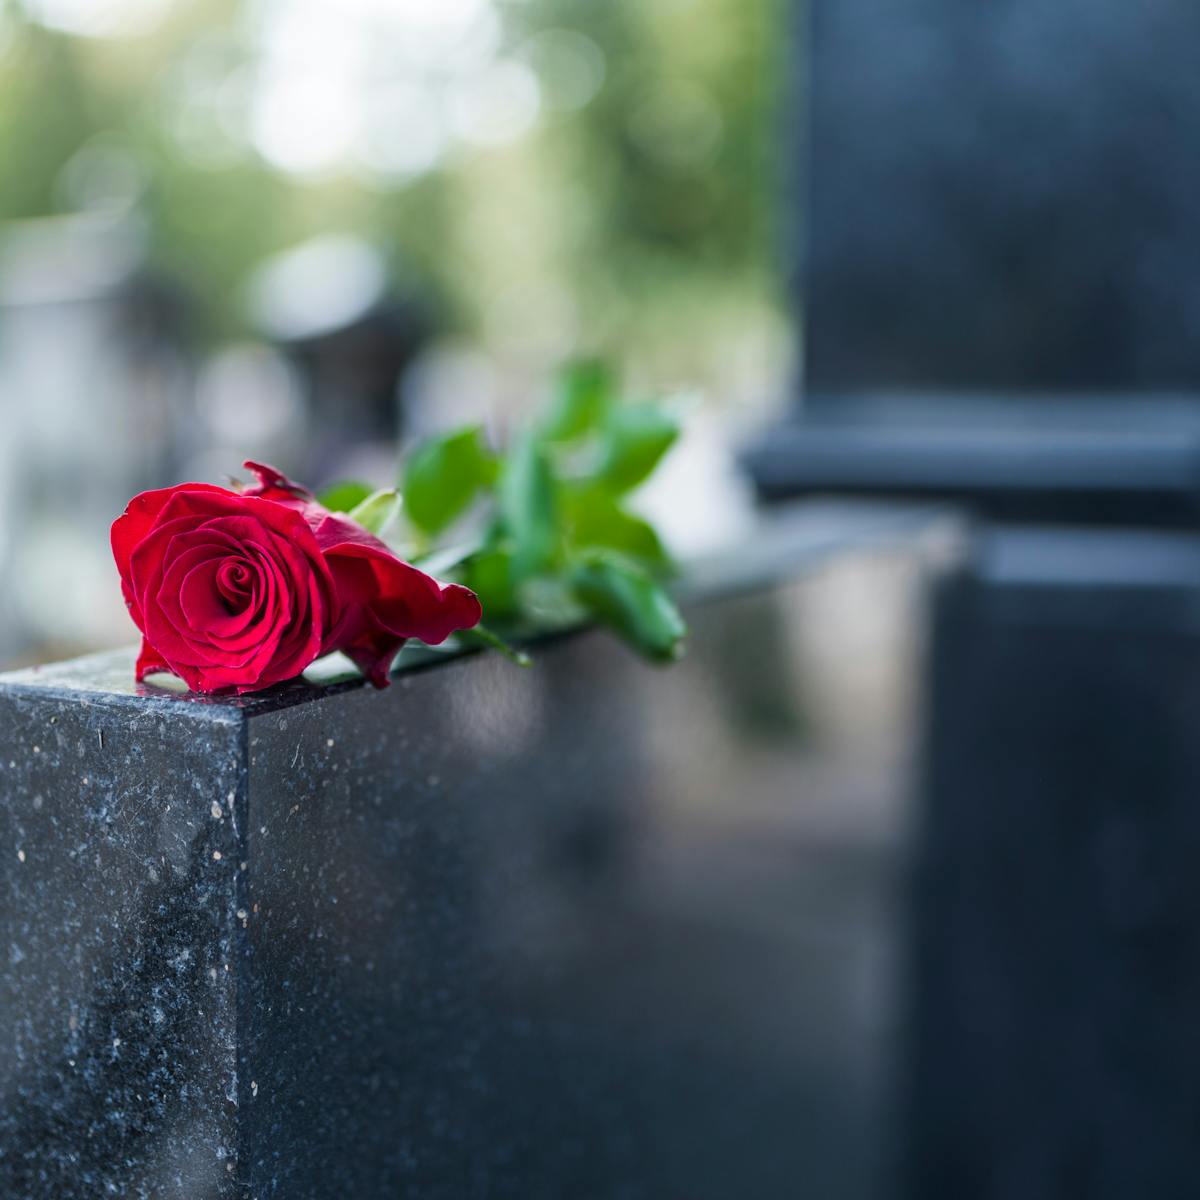 Lo que susurran las flores del cementerio